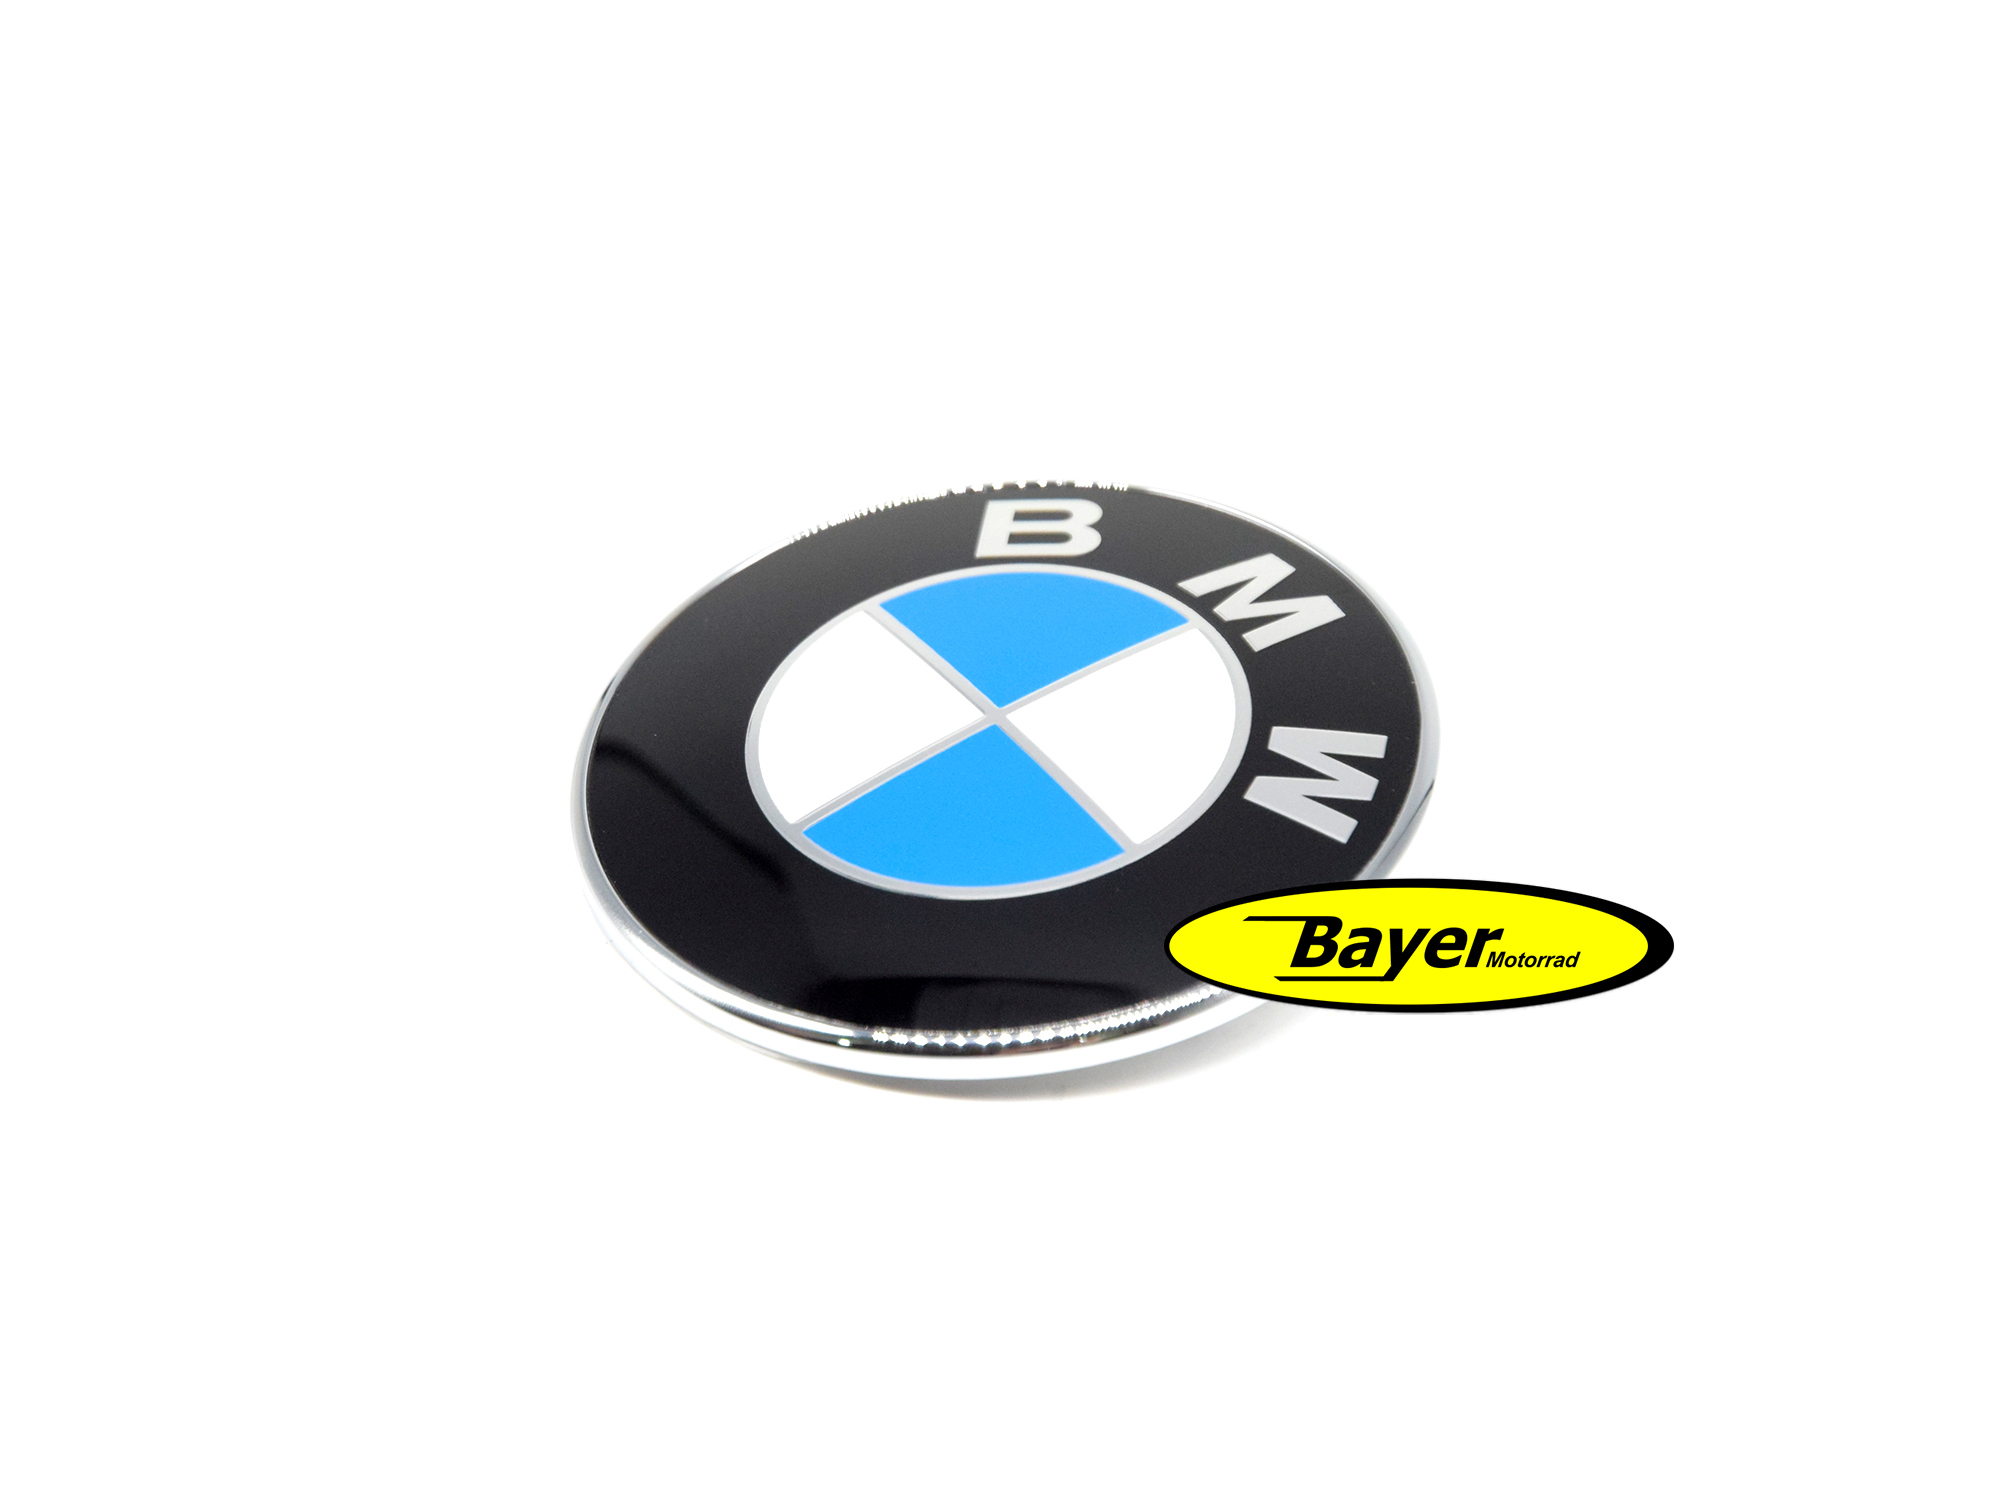 Emblème BMW 70 mm, avec bord chromé et 2 broches de guidage